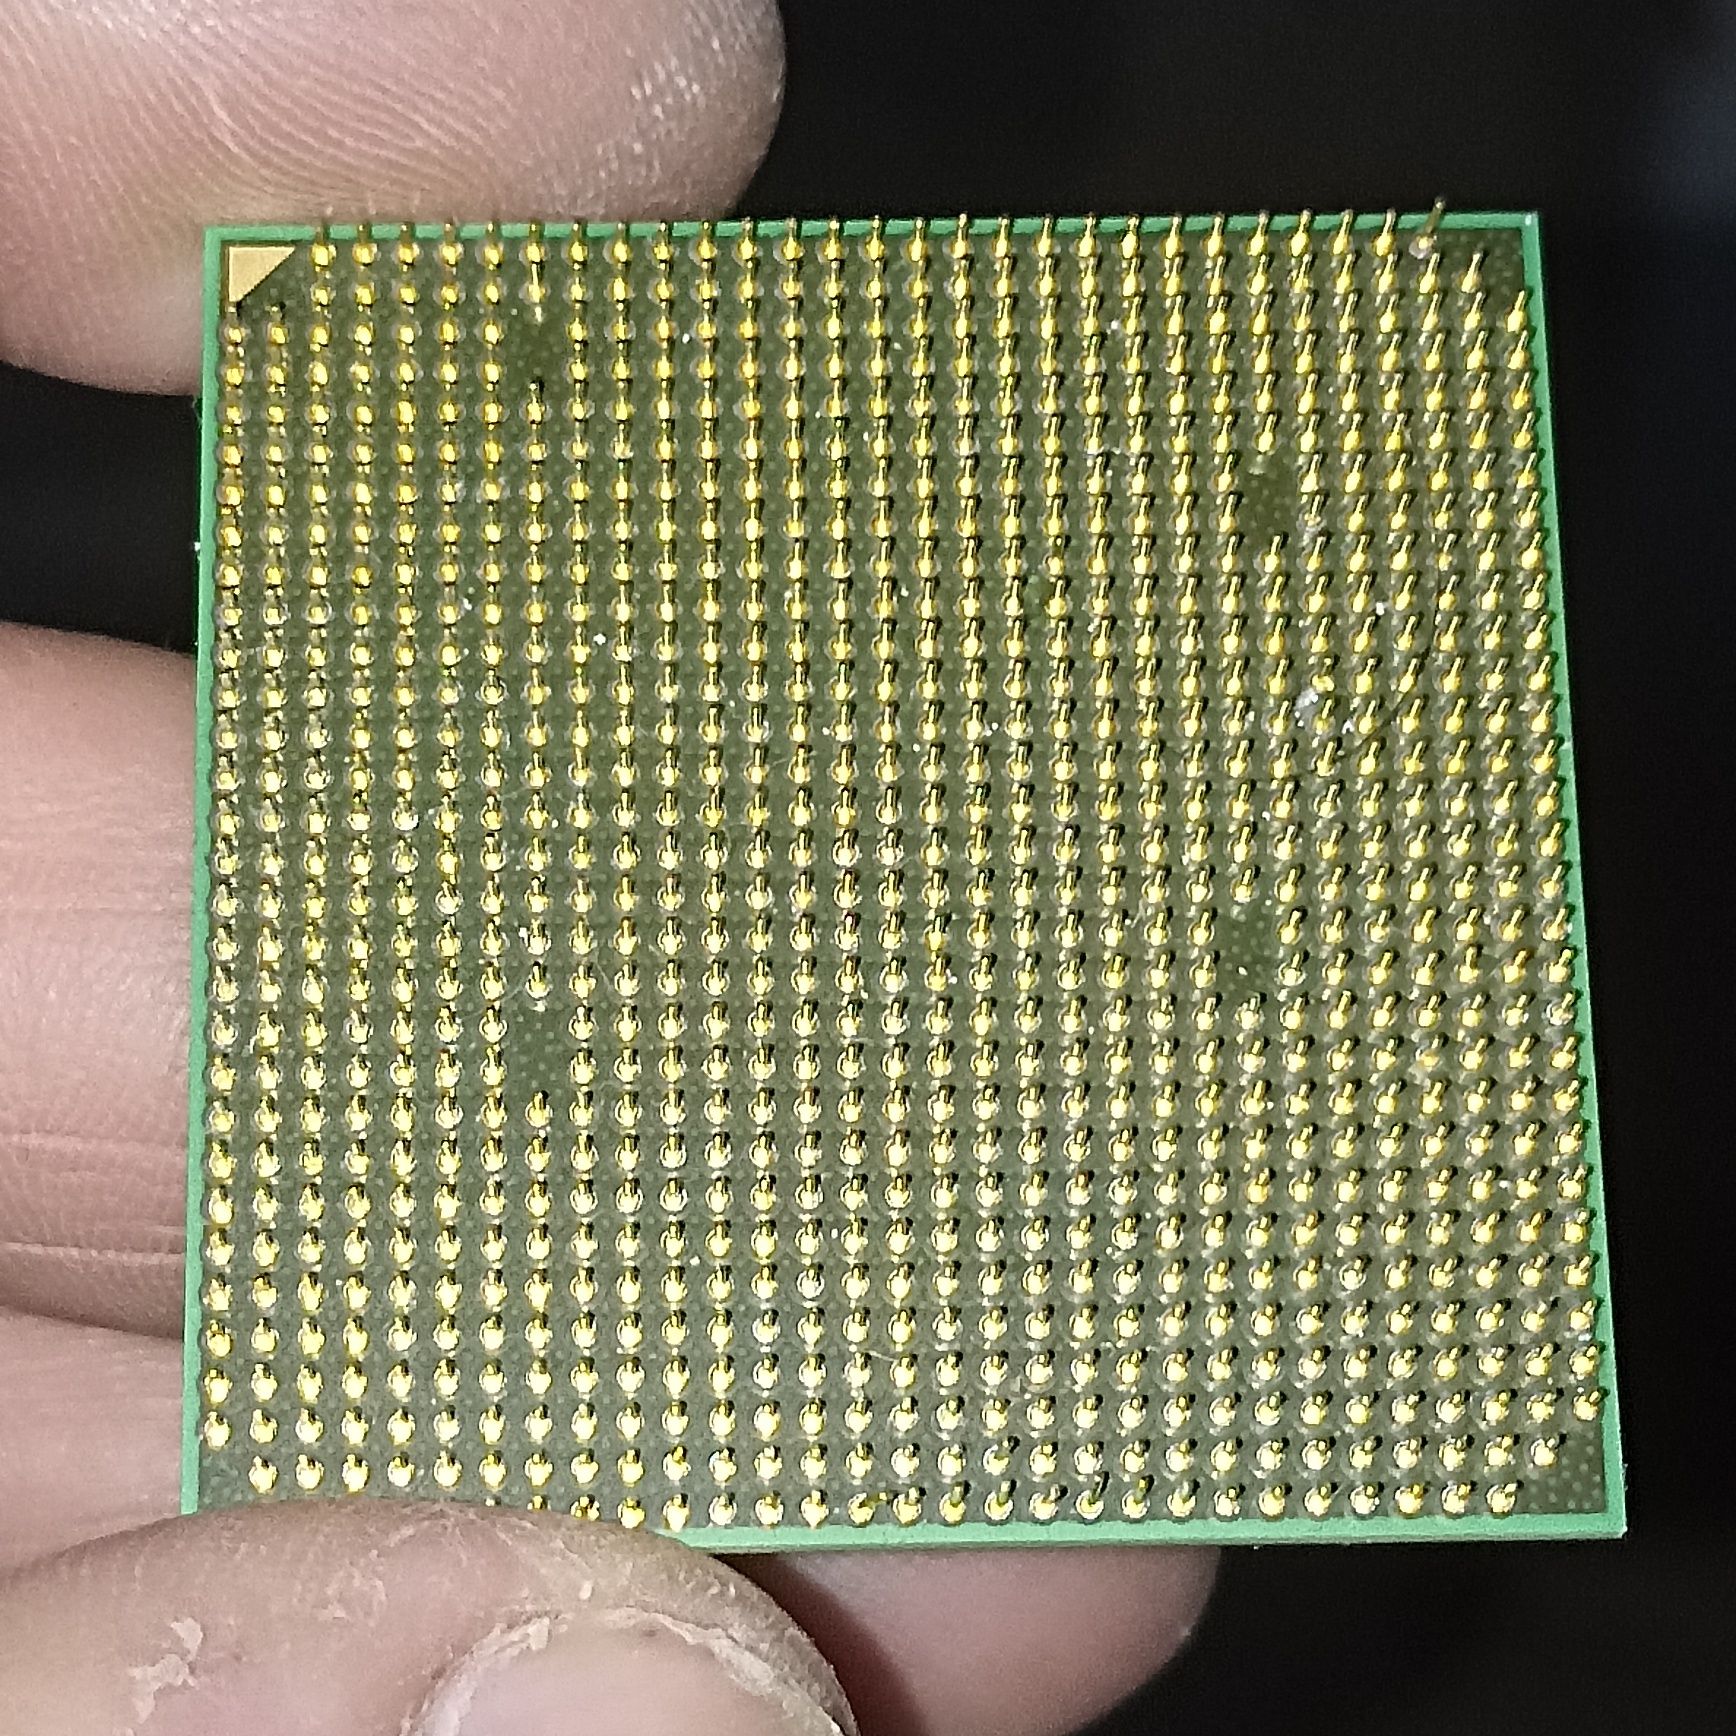 Processador muito Antigo da AMD para Coleccionadores